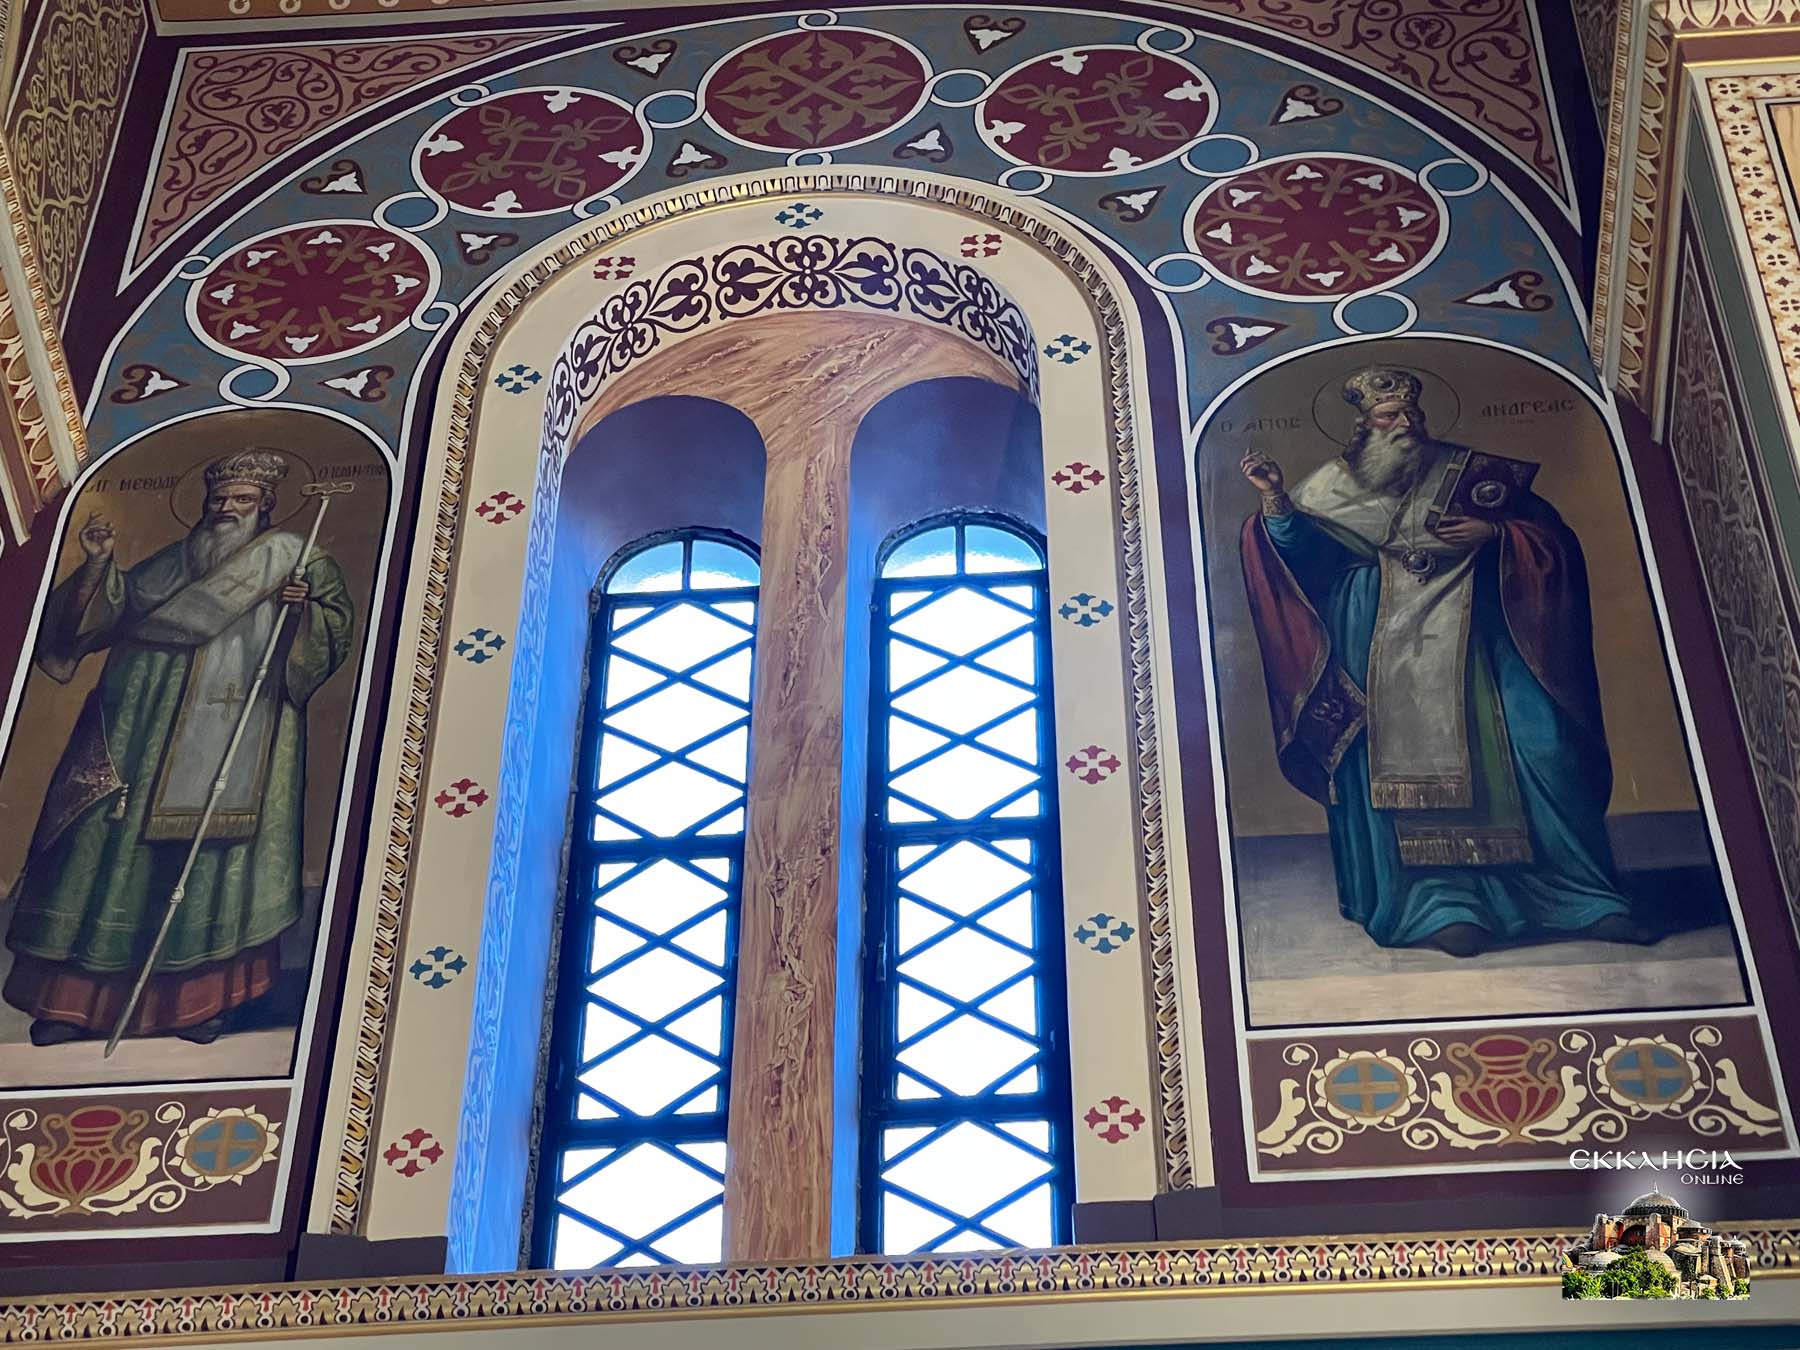 Επέτειος ενθρονίσεως Ιεράς Εικόνας της Παναγίας Βηματάρισσας στο Ναό Ευαγγελιστρίας Πειραιώς